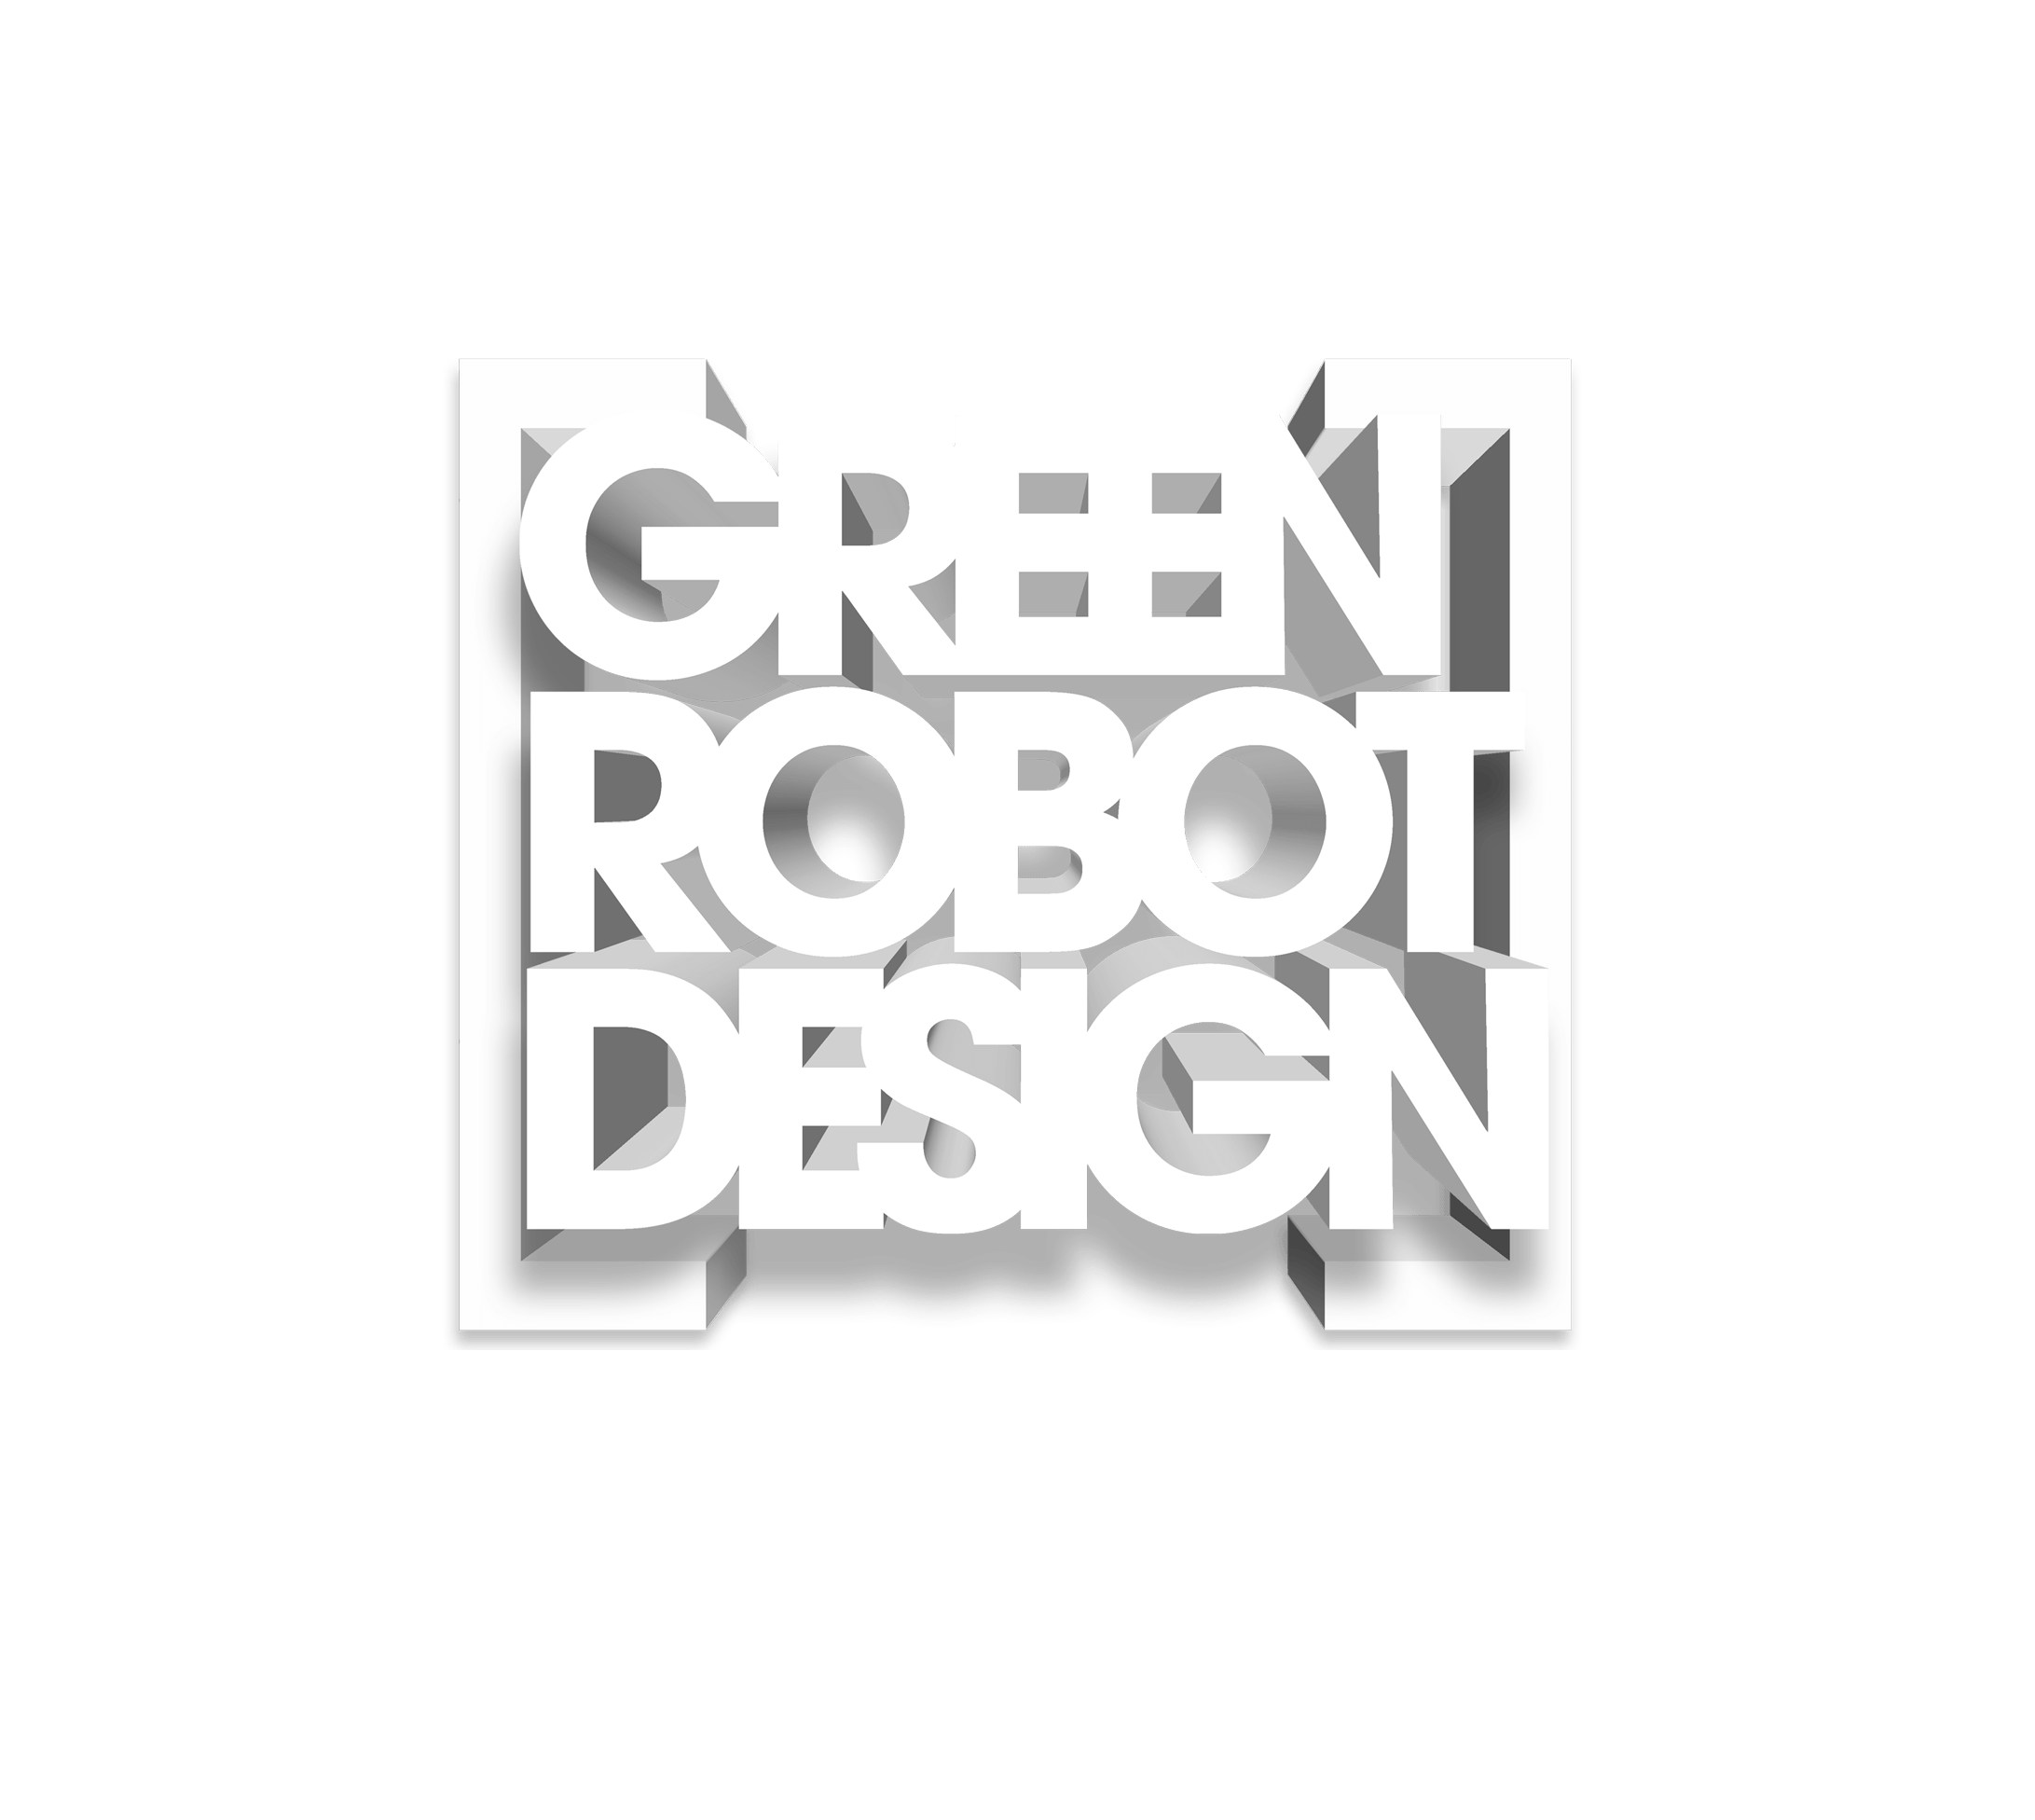 Green Robot Logo - The Hype around Green Robot Design |